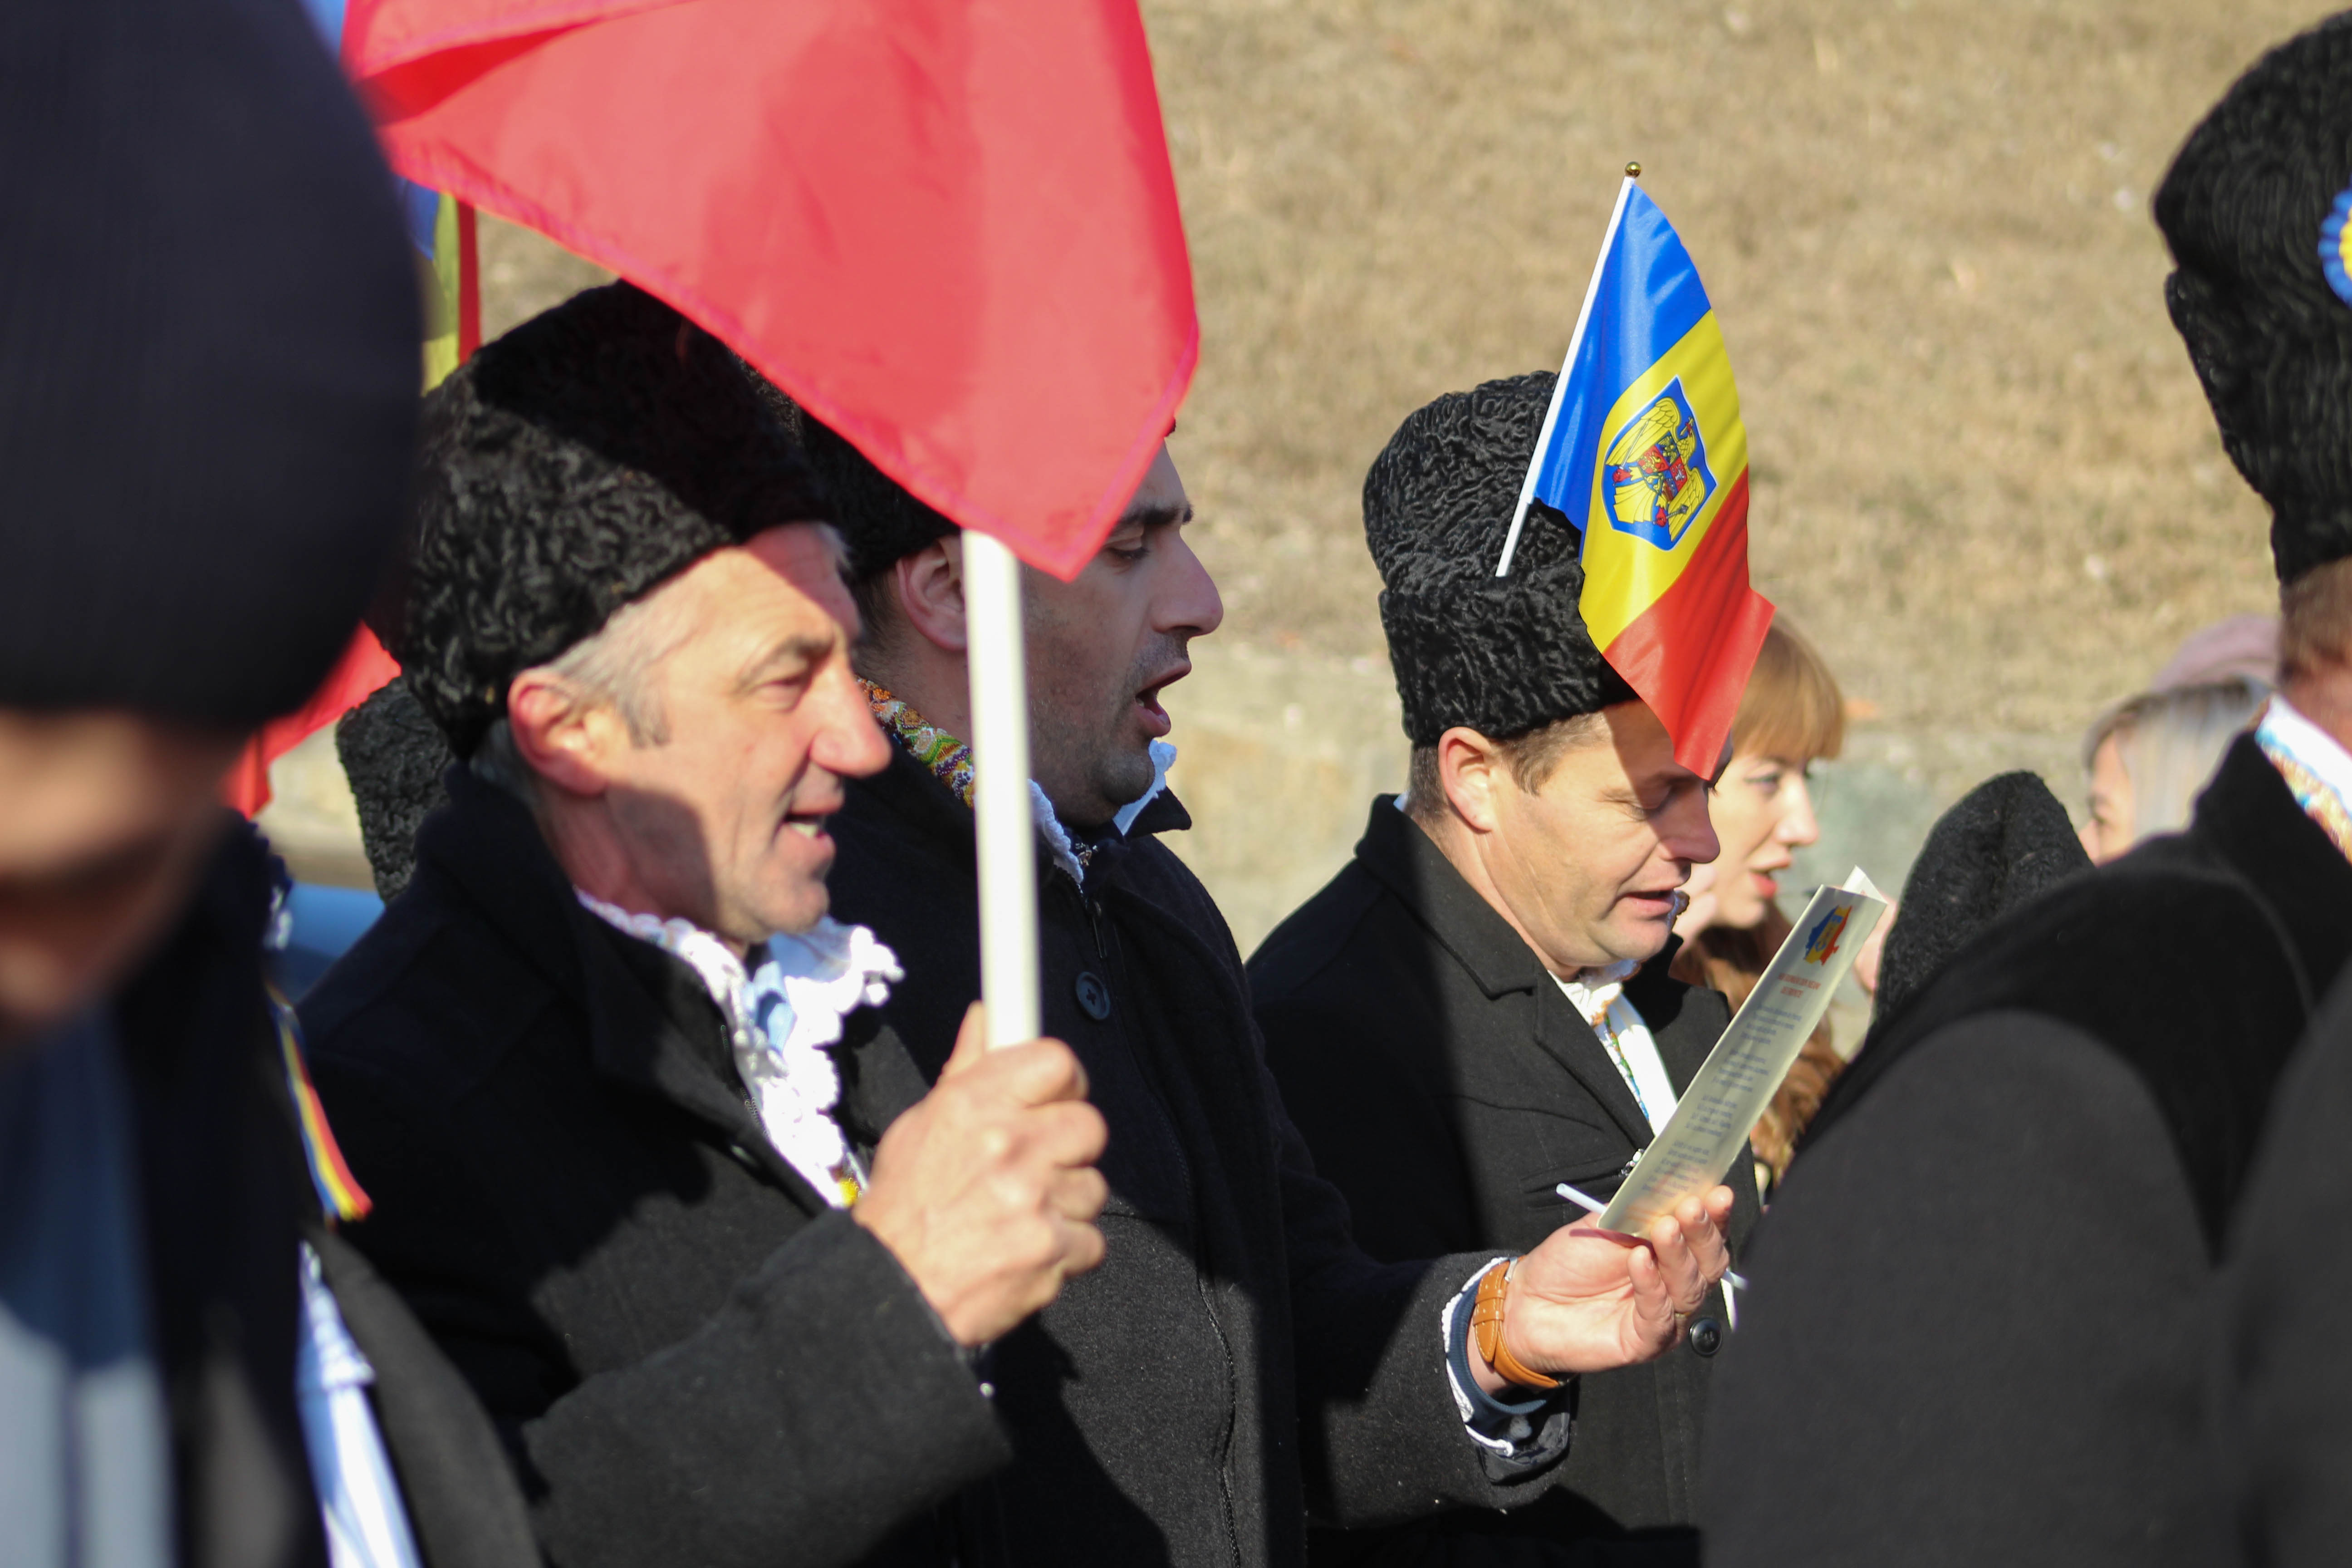 Un grup din Maramureș a participat în număr restrâns la paradă, doar 3 persoane, la fel ca acum 100 de ani, când se semnase actul unirii la Alba Iulia